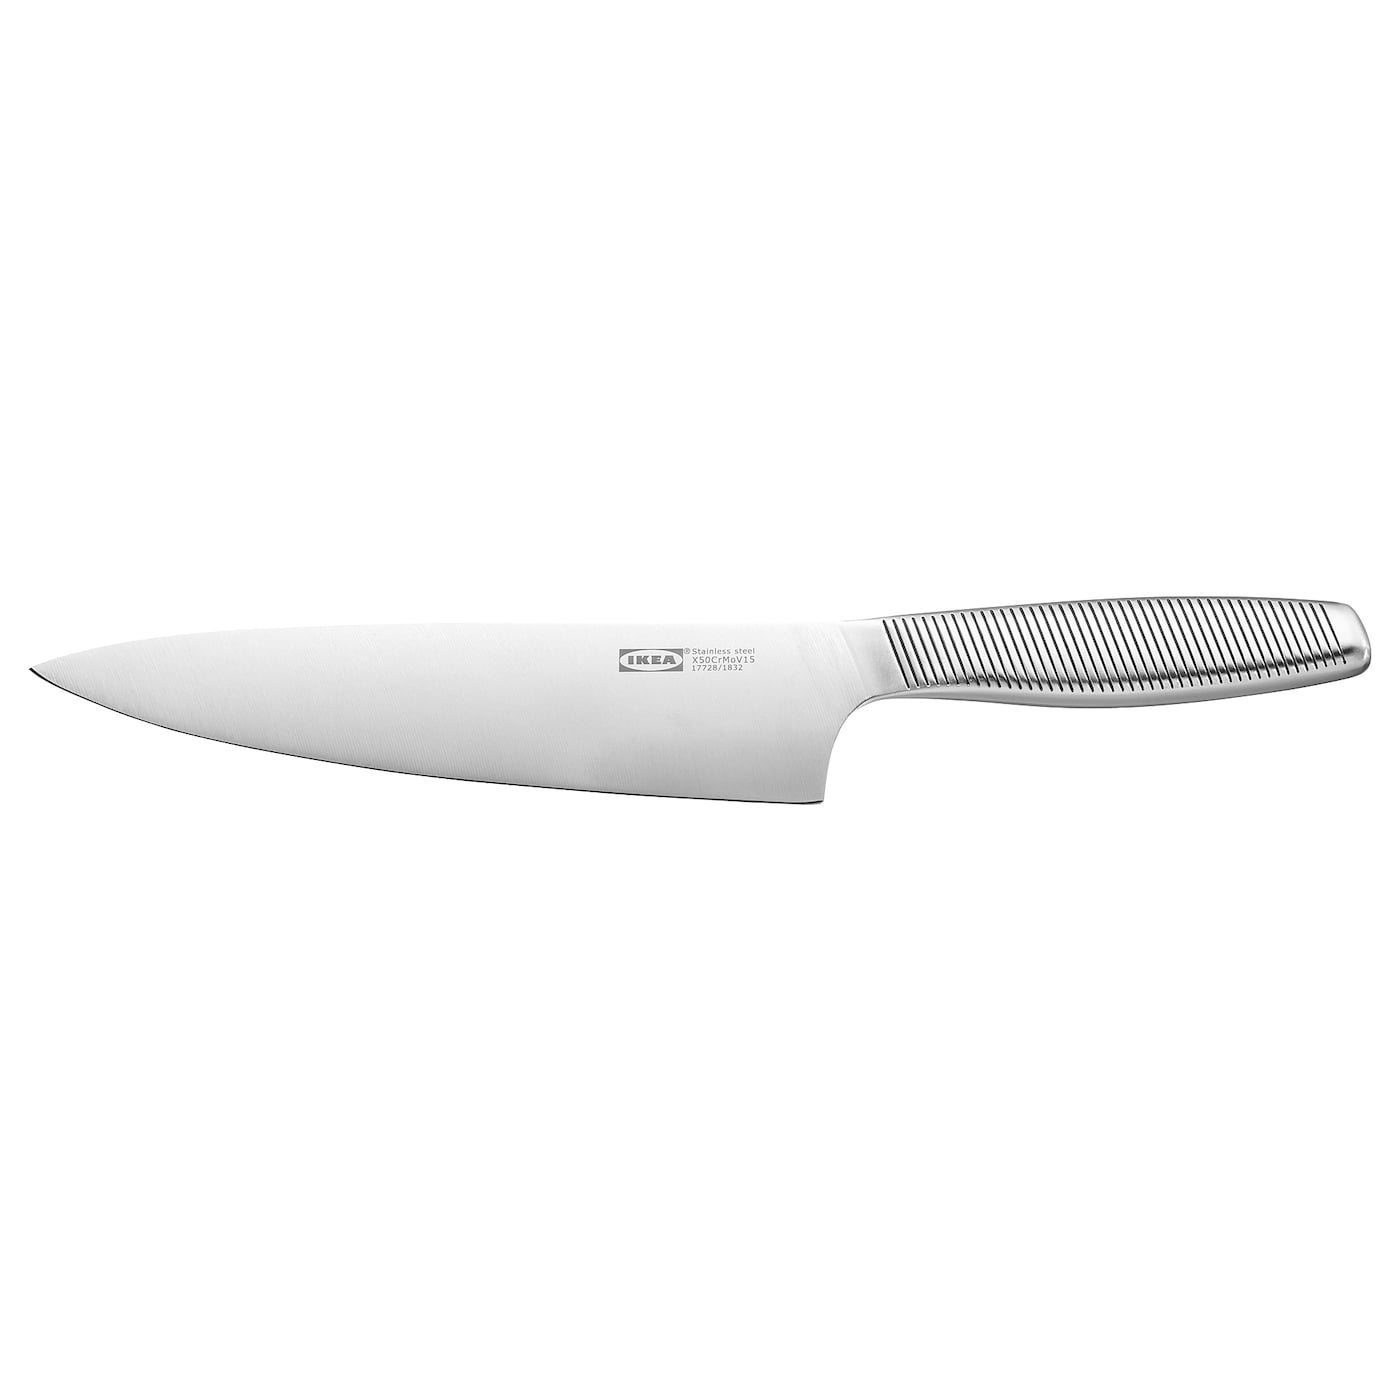 [ส่งฟรี ] มีดทำครัว, สแตนเลส 20 ซม. Cook's knife, stainless steel 20 cm มีดทำครัว ชุดมีดทำครัว มีดหั่นสเต็ก มีดหั่นเนื้อหมู มีดหั่นของ โปรโมชั่นสุดคุ้ม โค้งสุดท้าย คุณภาพดี